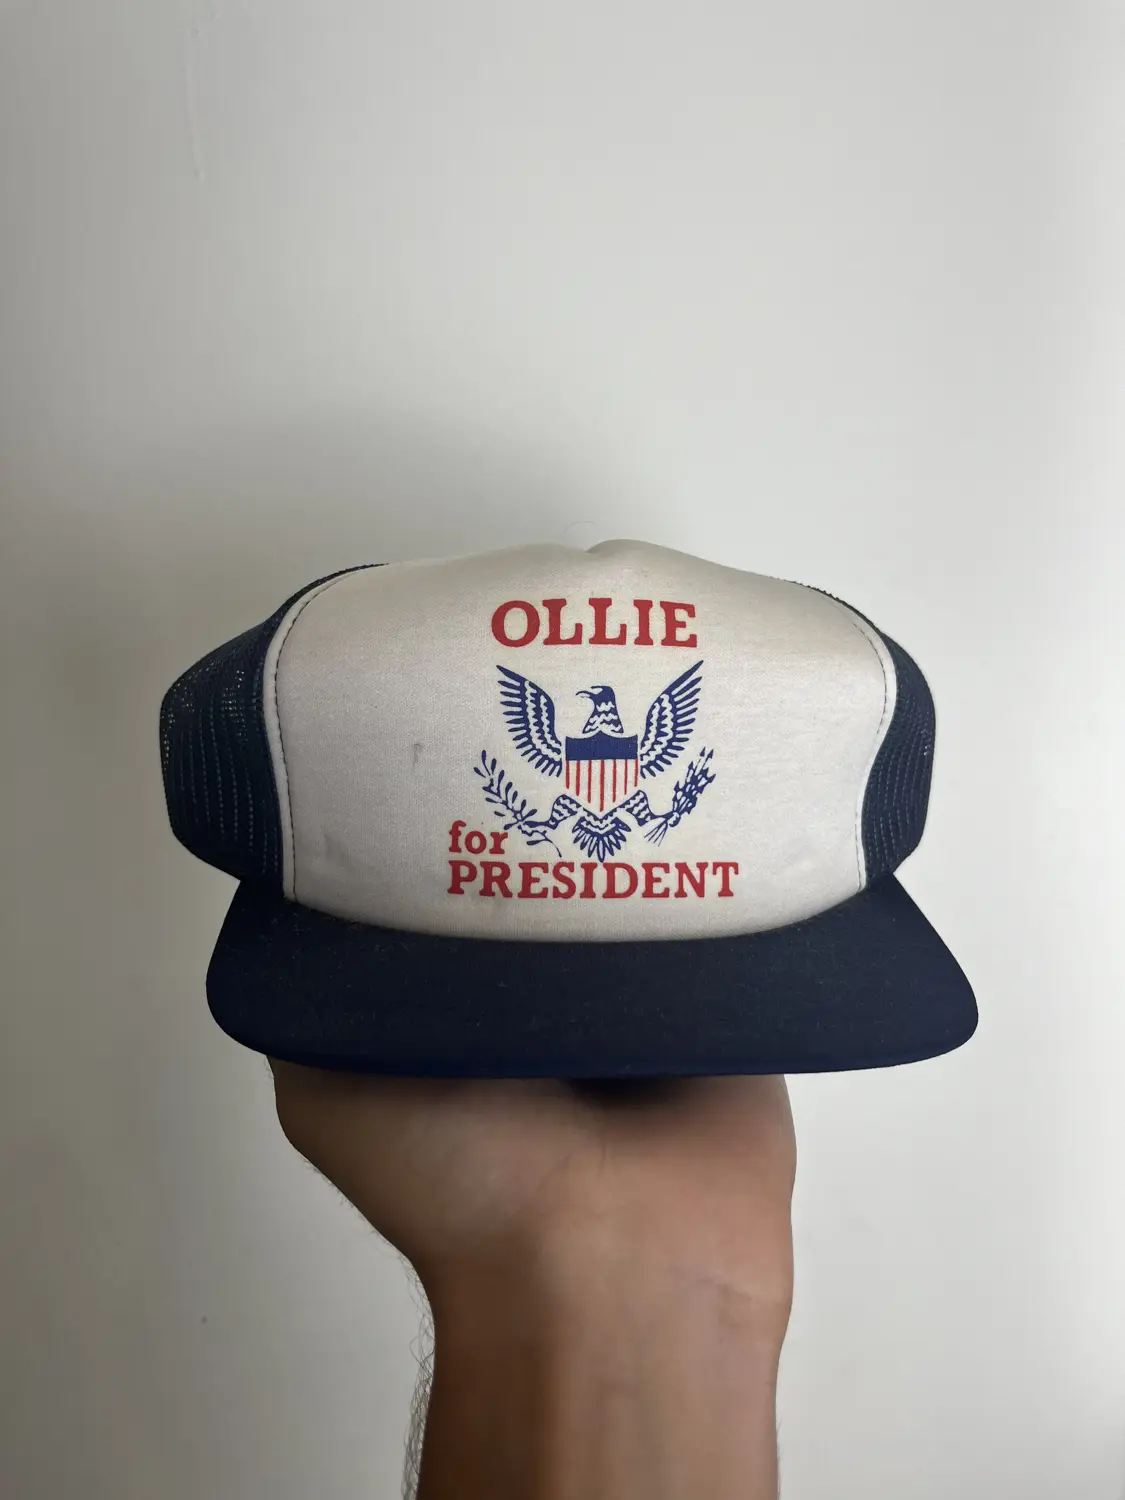 Ollie for President hat